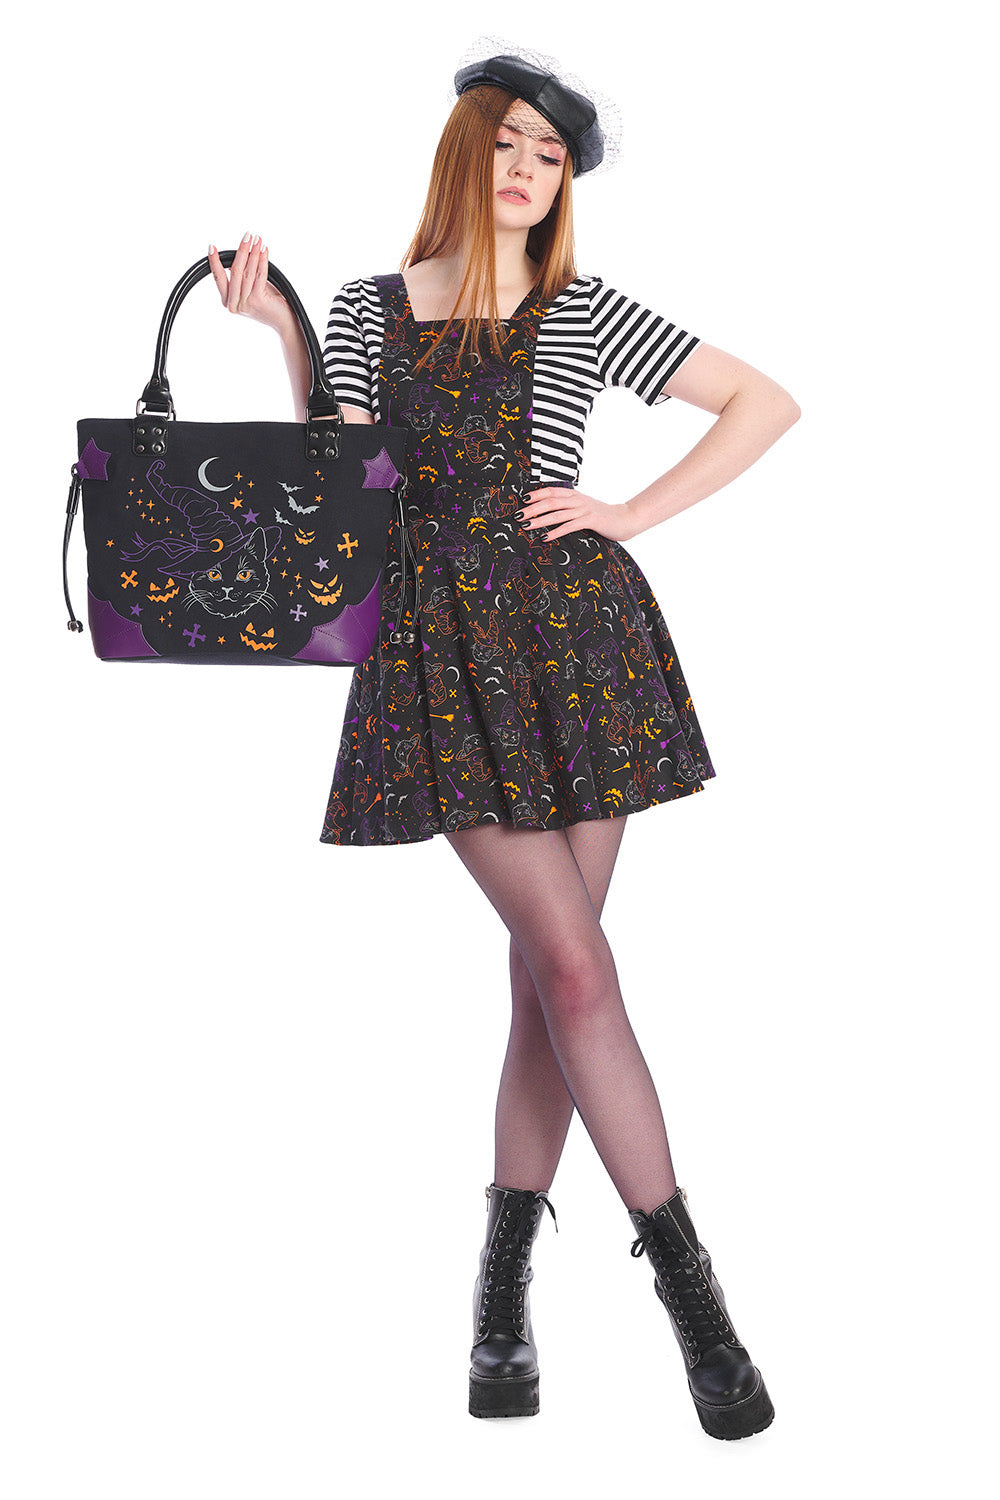 Lost Queen Women’s Halloween Handbag Black Cat Witch Spell On Me Shoulder Bag Purse